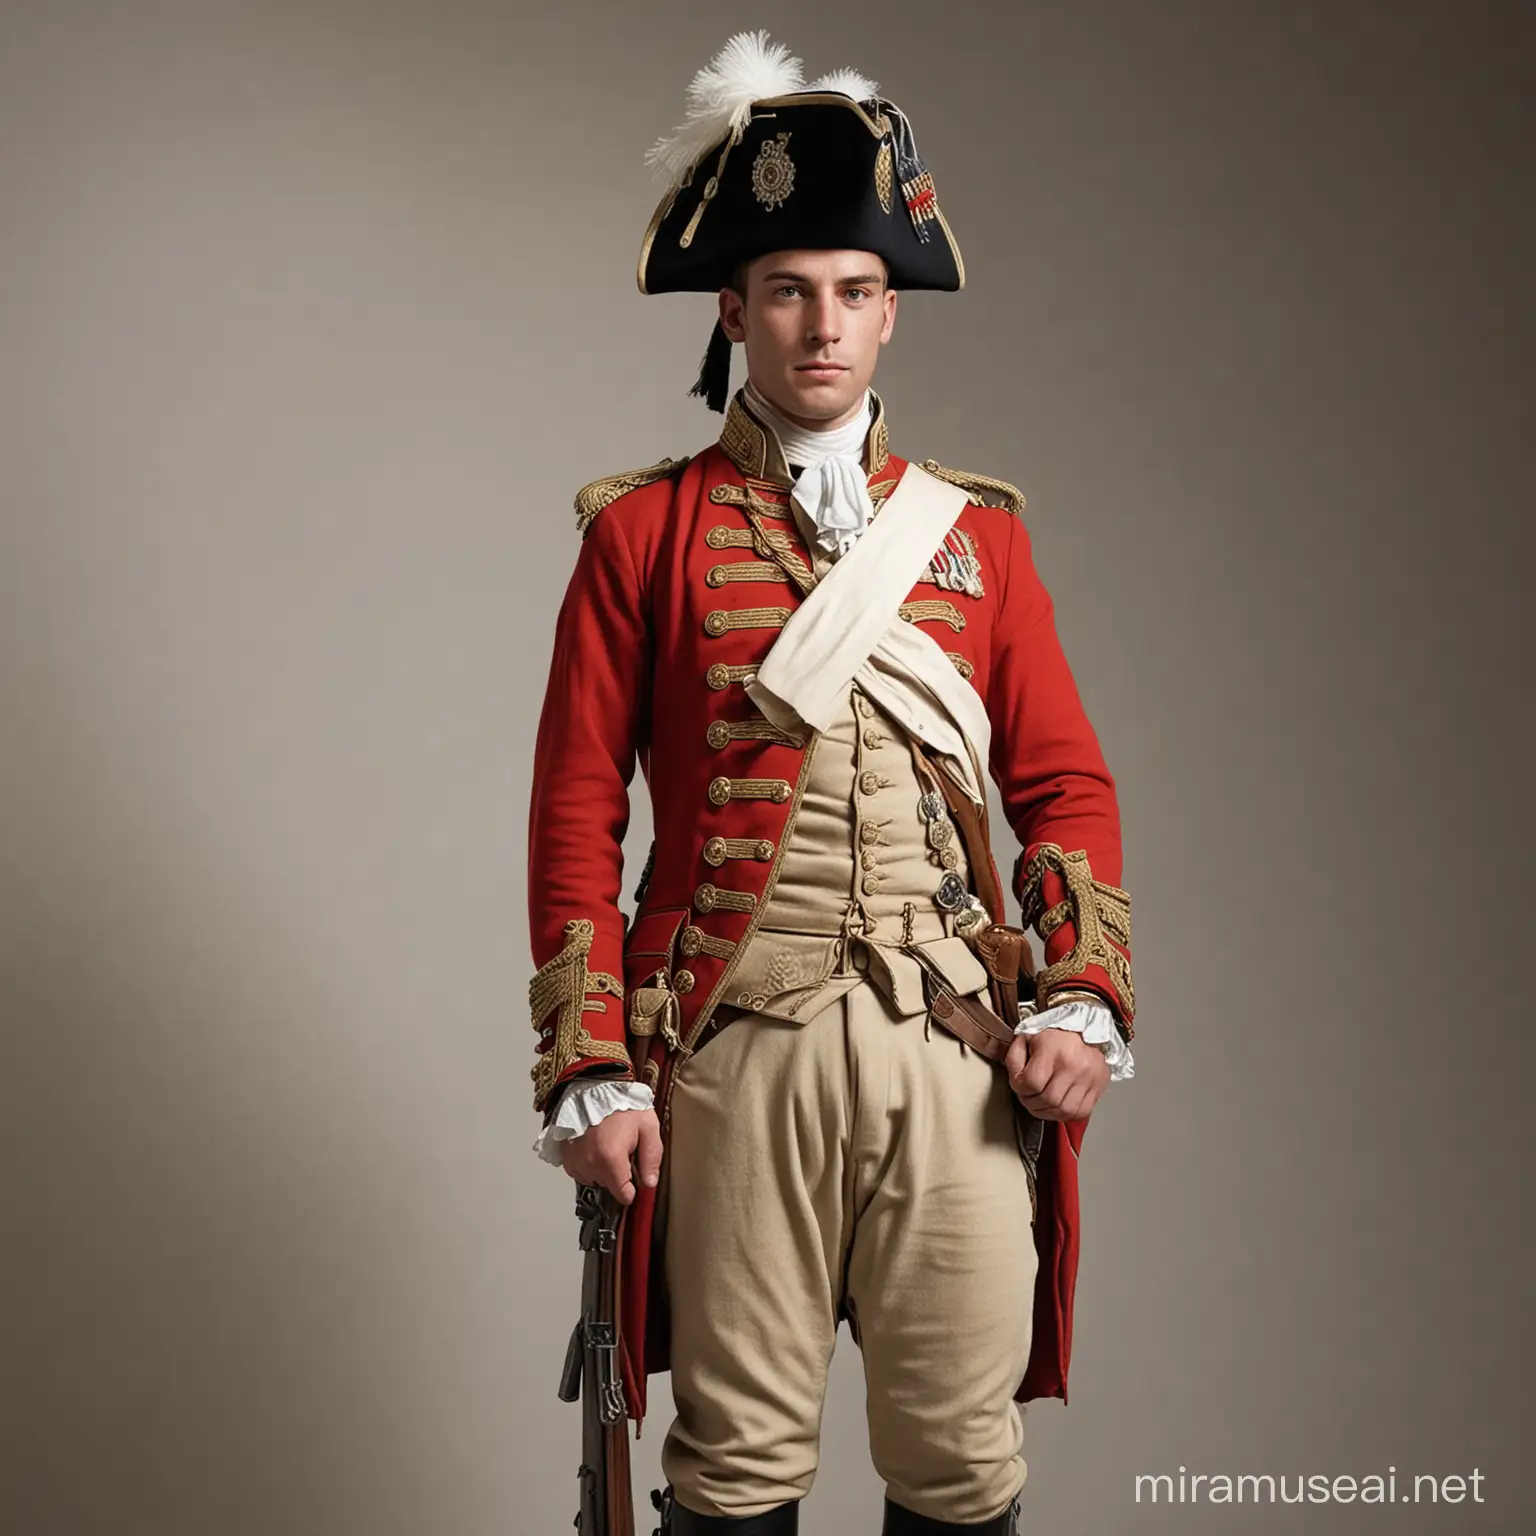 18th Century British Soldier in Full Regalia